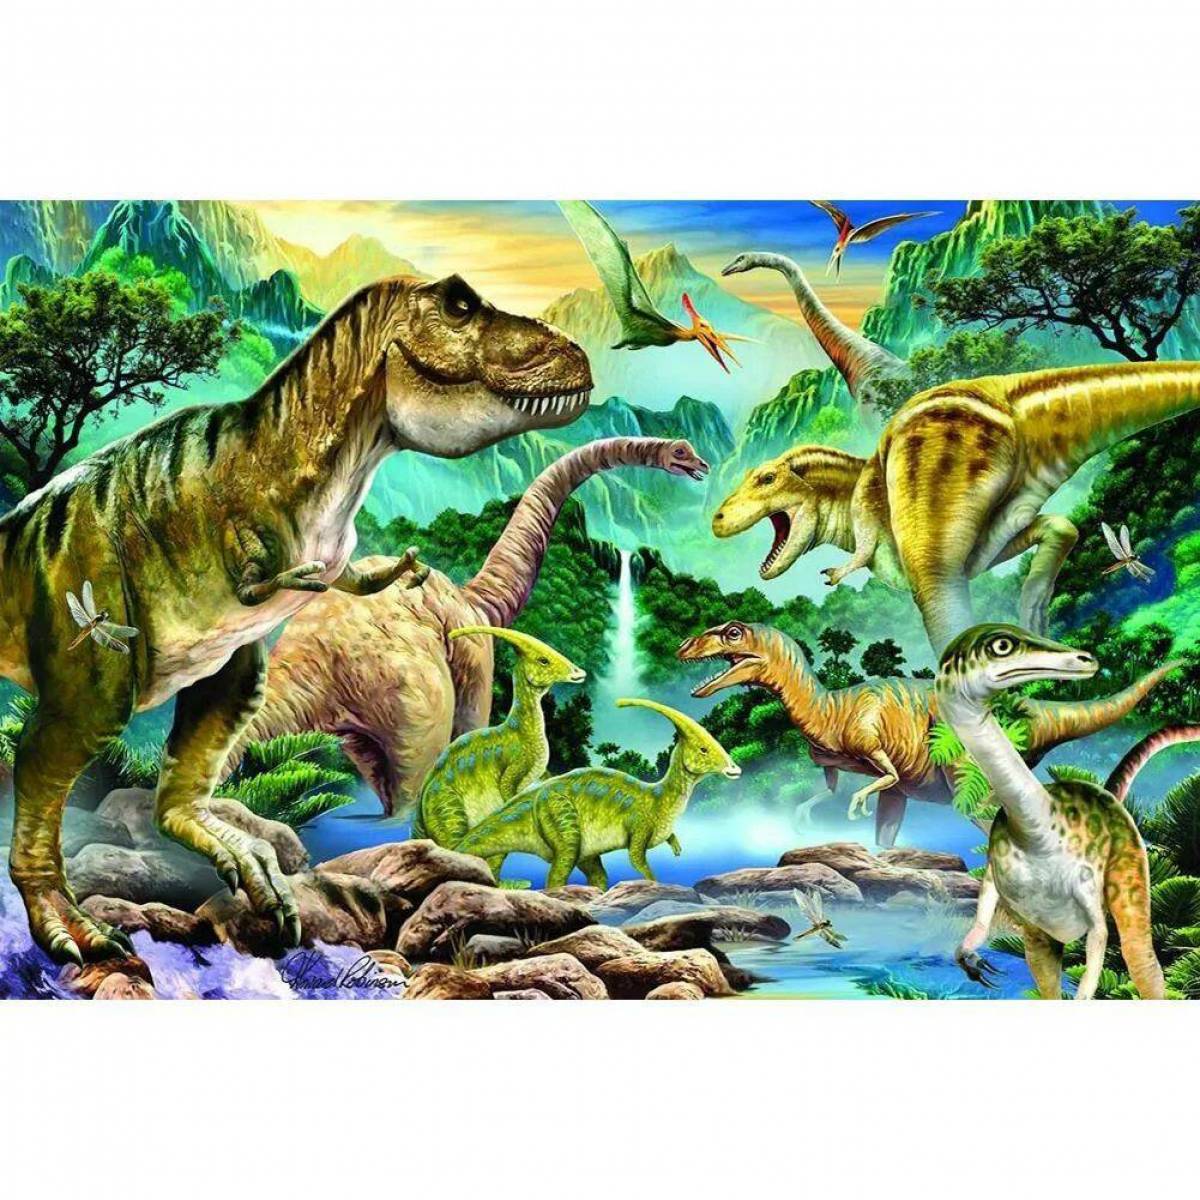 Мир динозавров 3. Юрский период мезозойской эры. Динозавры Юрского периода. Динозавры мезозойской эры. Животные Юрского периода мезозойской эры.